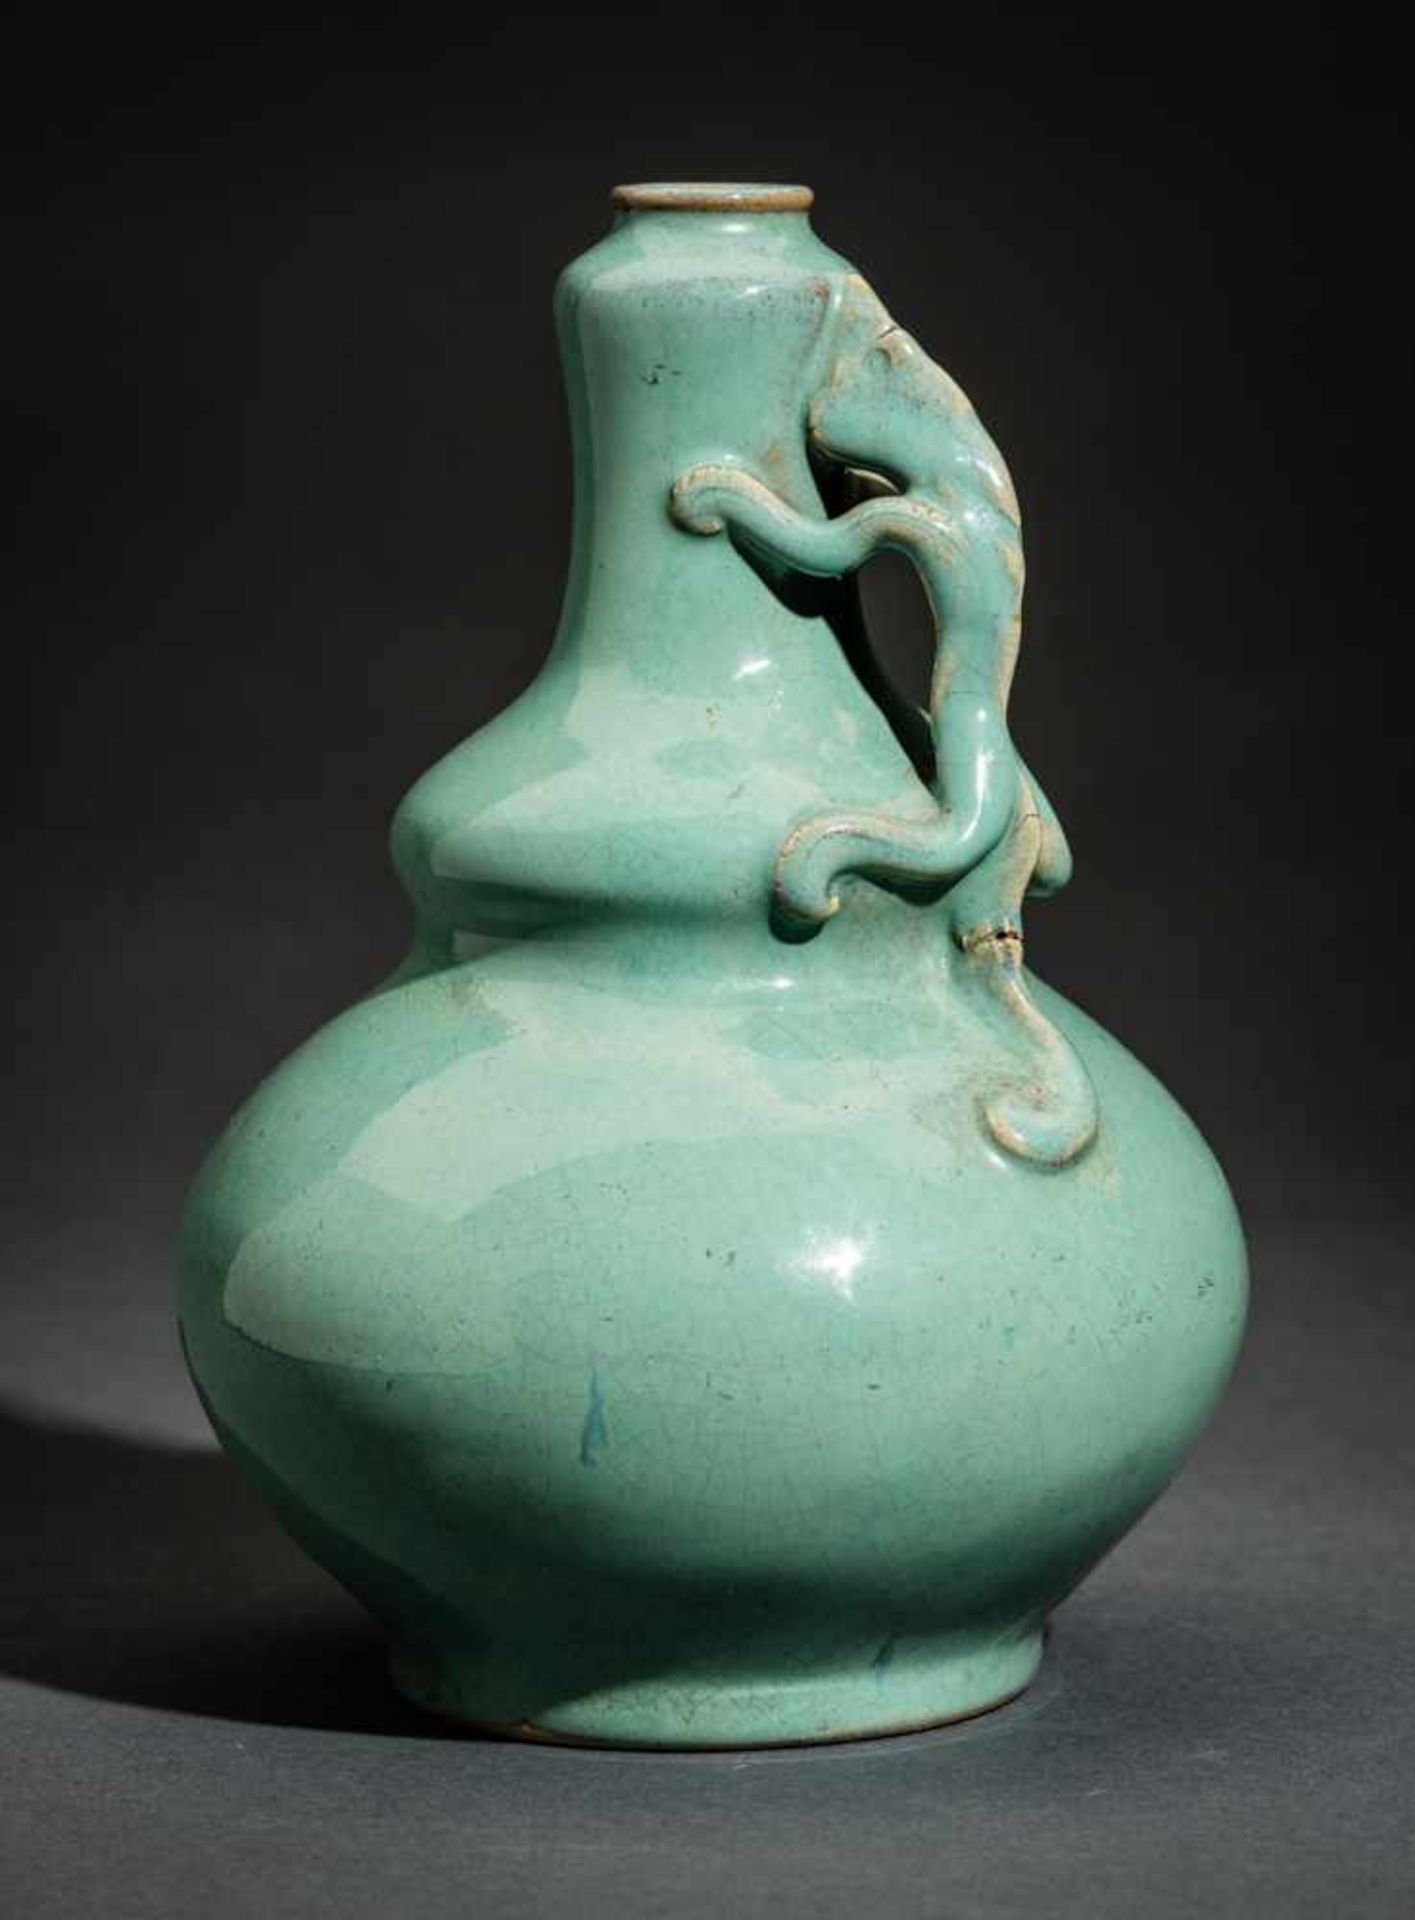 VASE MIT DRACHENGRIFF Glasierte Keramik, China. ca. spätes Qing (1644-1911) bis danachLichtgrün